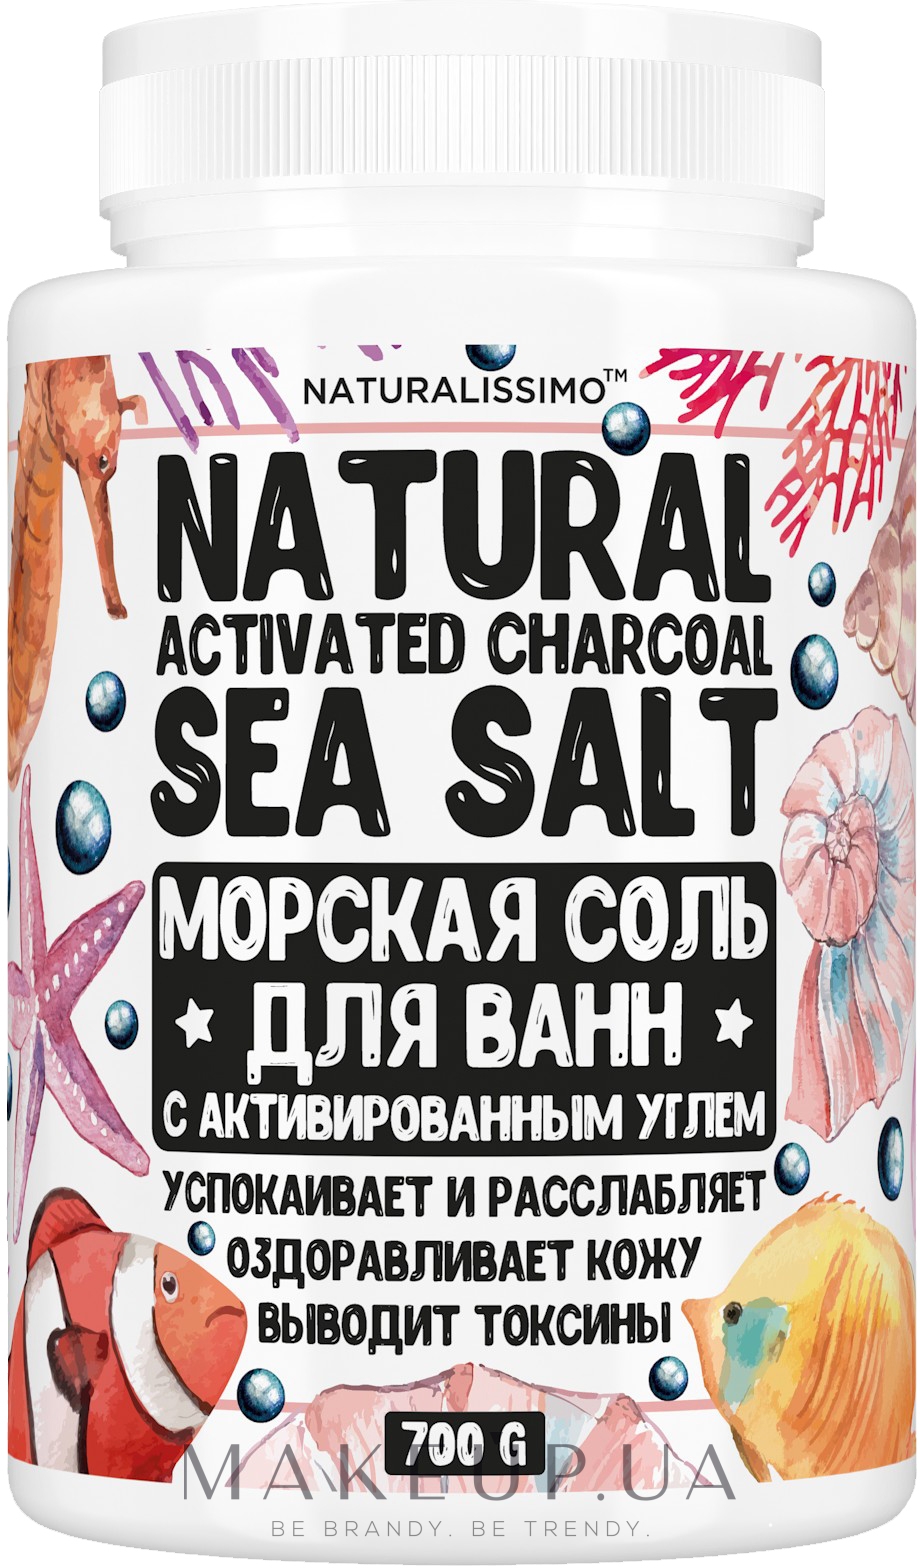 Натуральная пудра морской соли с активированным углем для ванн - Naturalissimo Natural Activated Charcoal Sea Salt — фото 700g